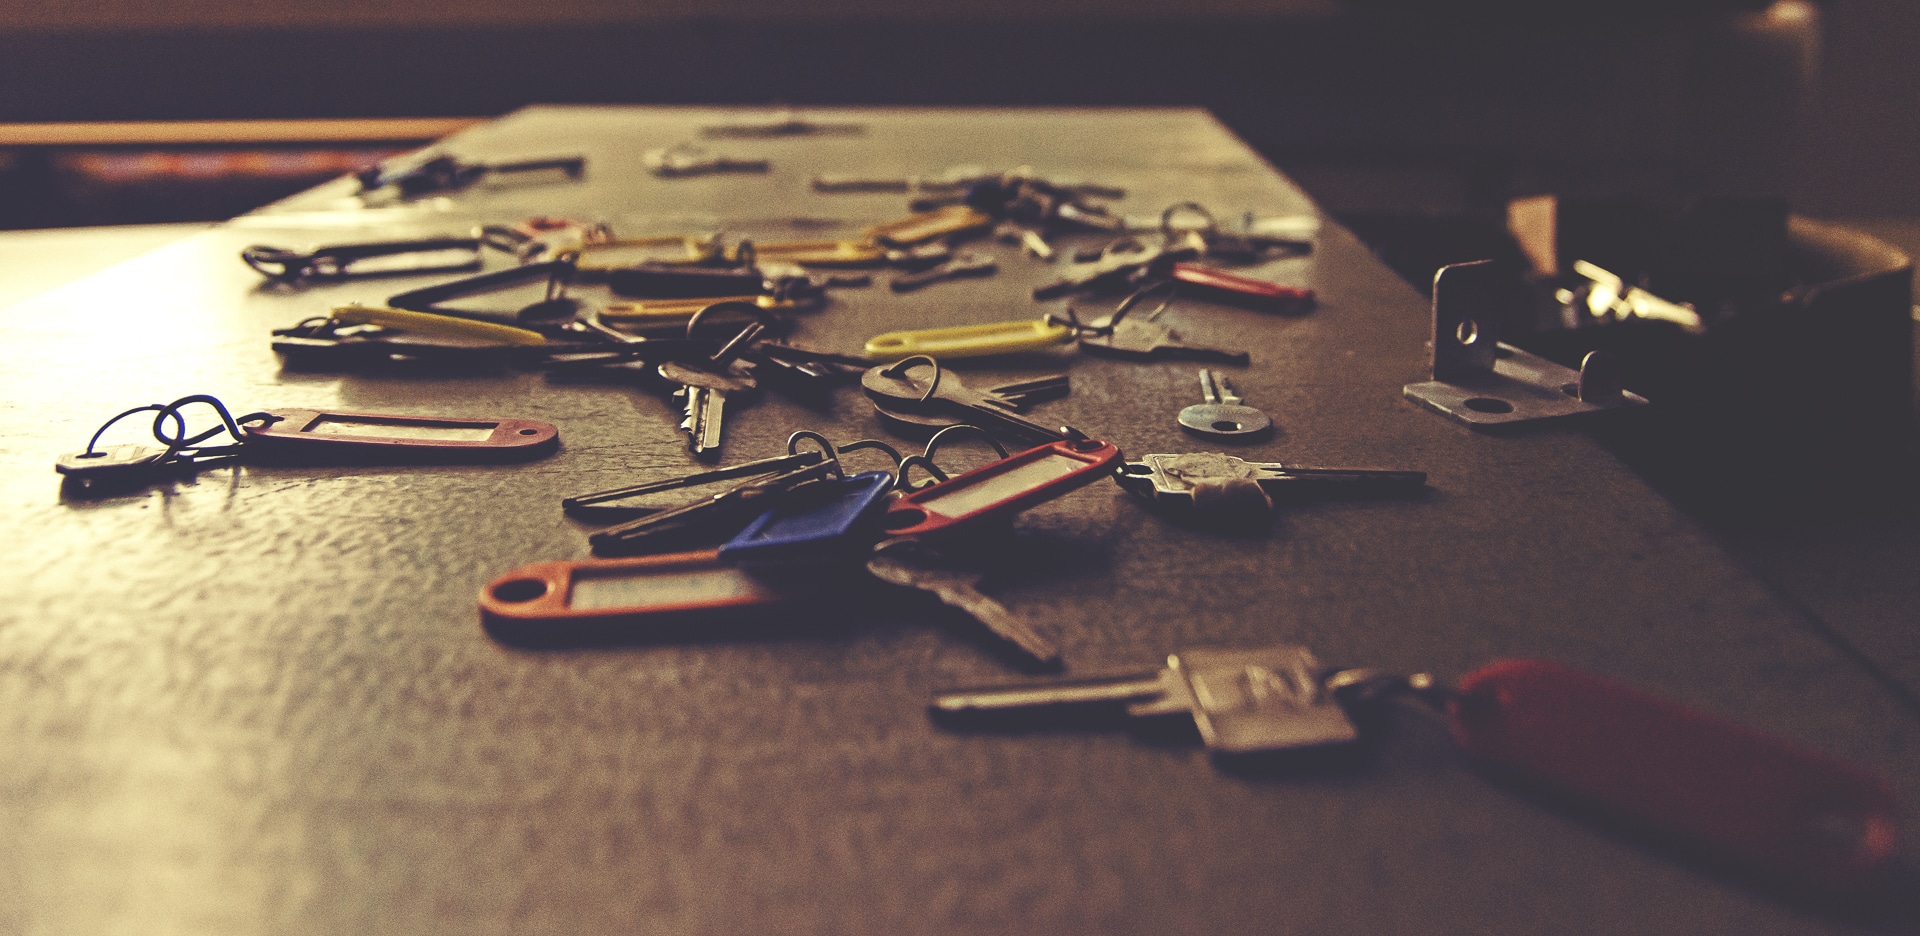 Pile de clés provenant des lois sur les objets perdus des lieux de réunion